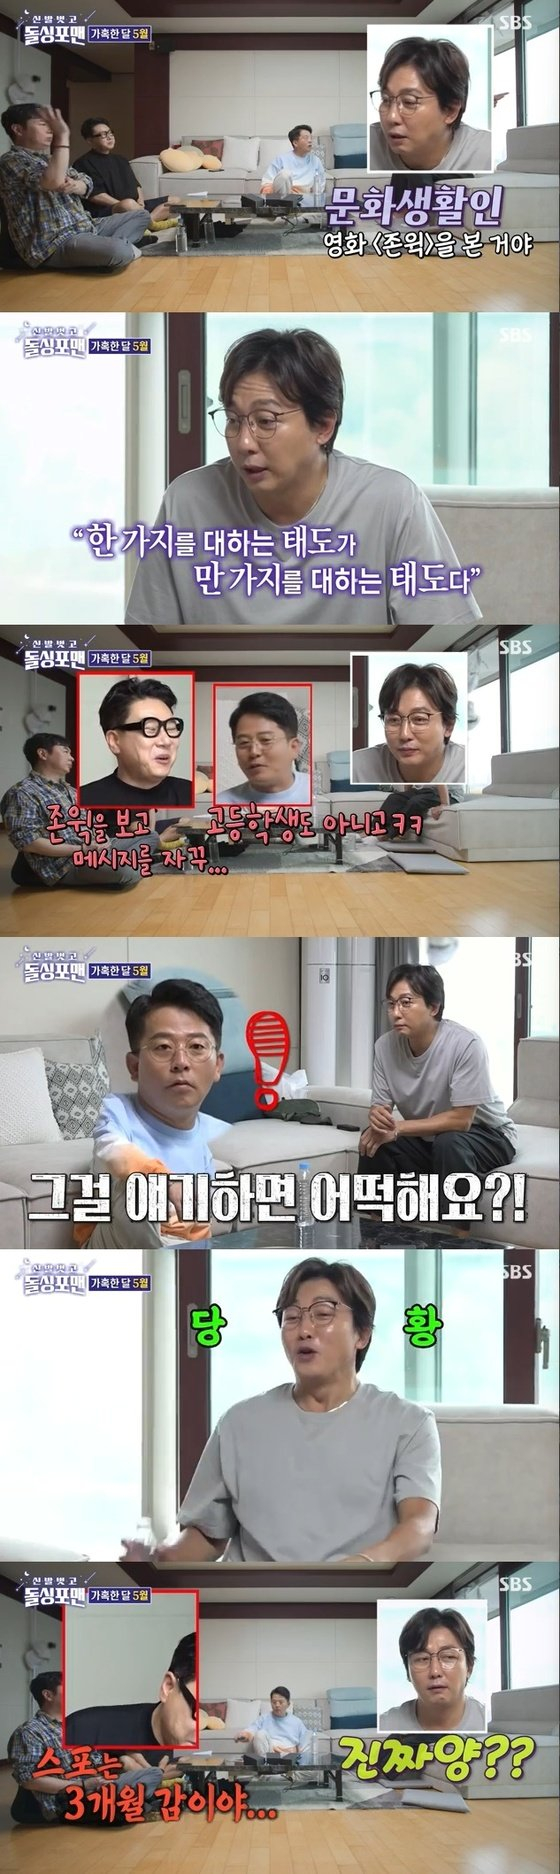 사진제공: SBS '신발벗고 돌싱포맨'